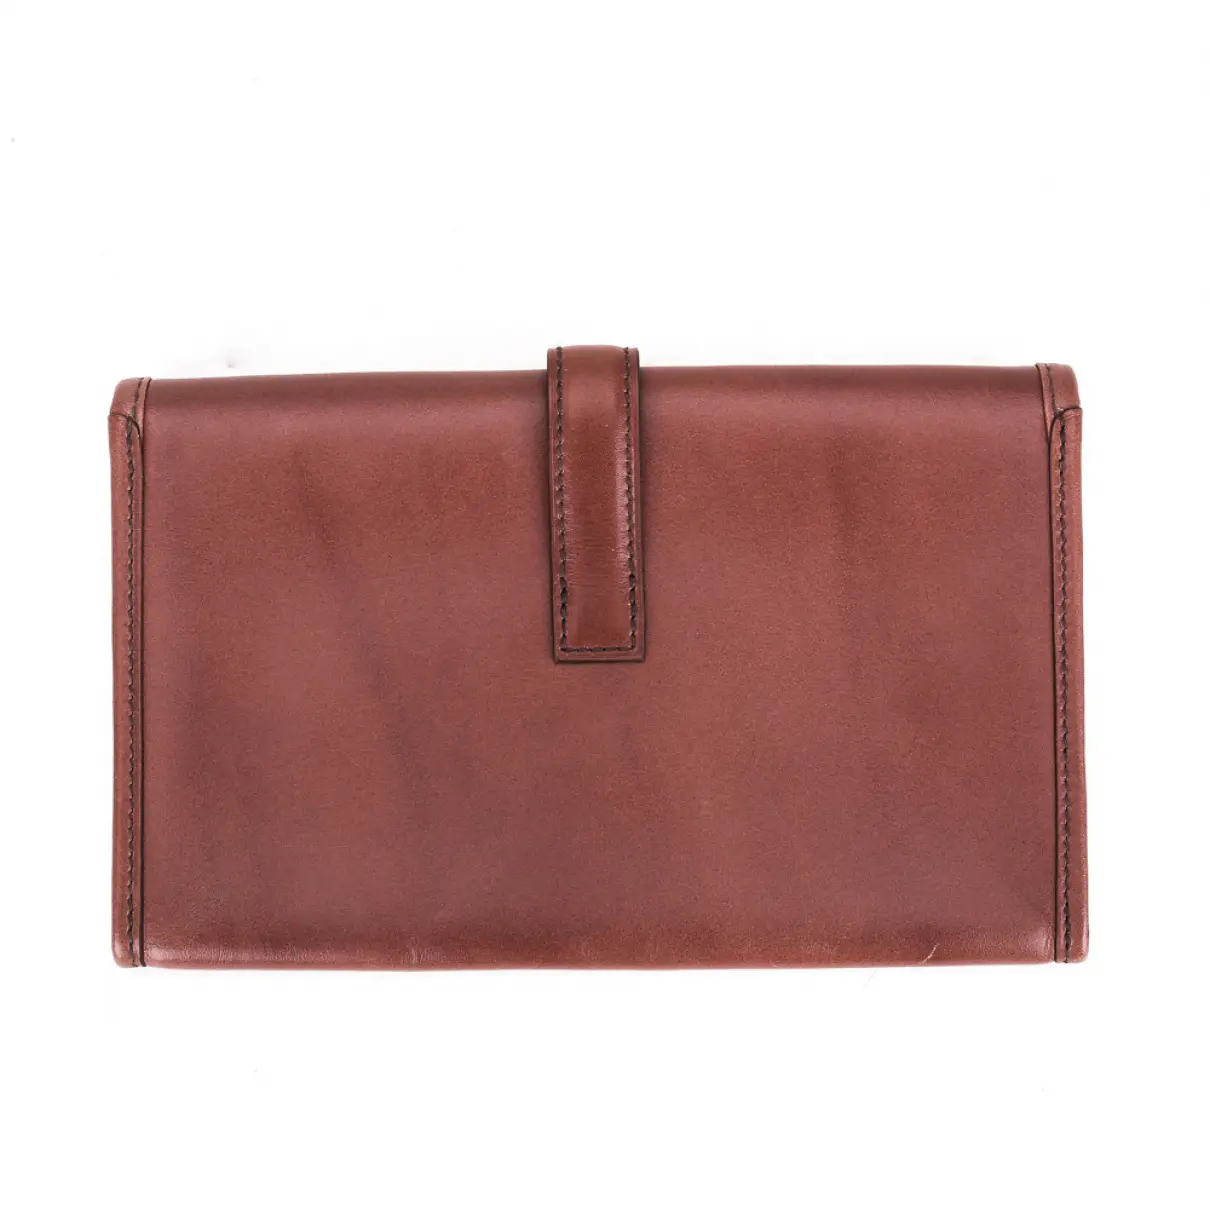 Buy Hermès Jige leather wallet online